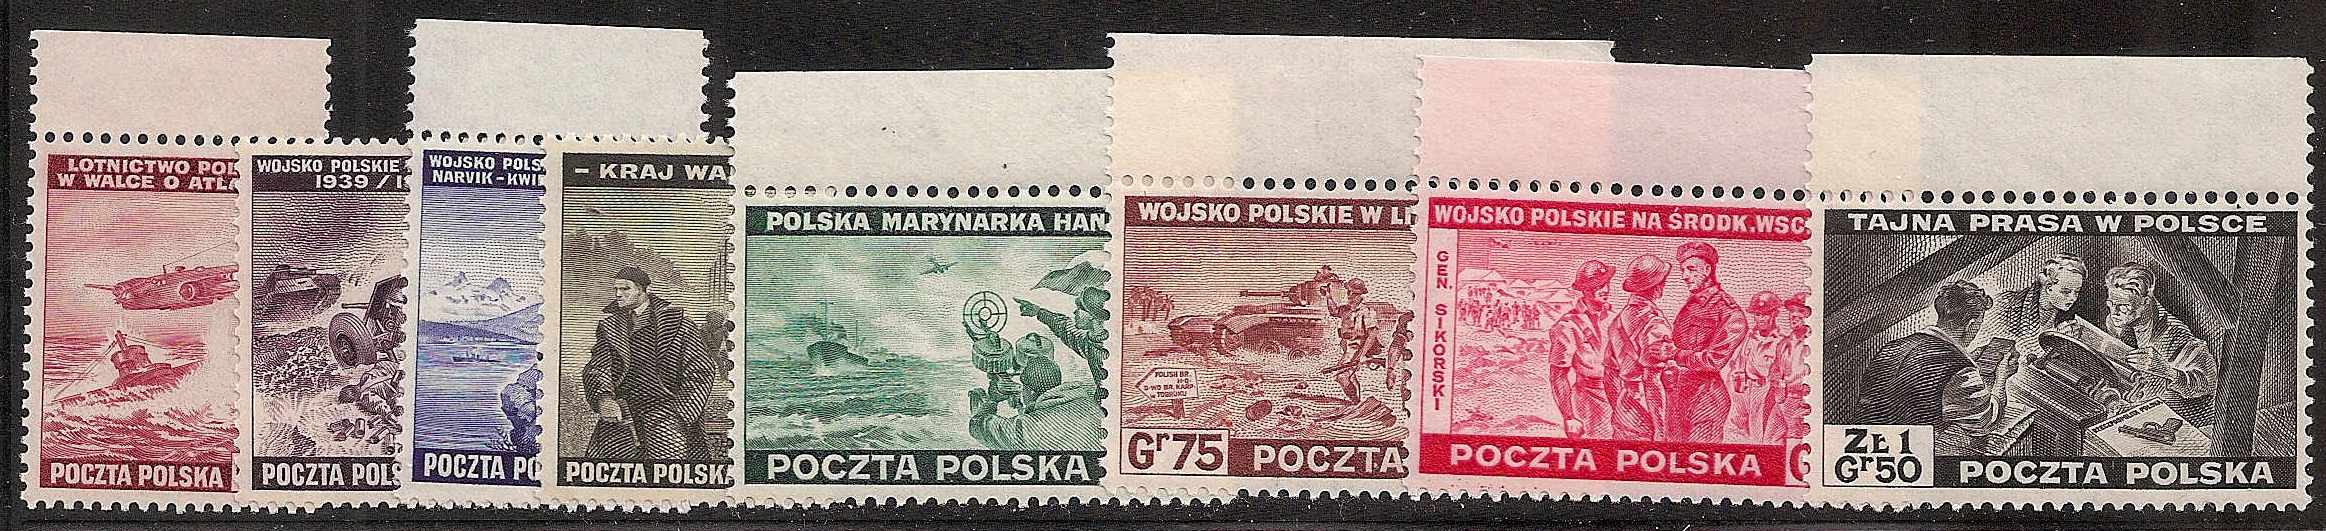  Poland Scott 3K9-16 